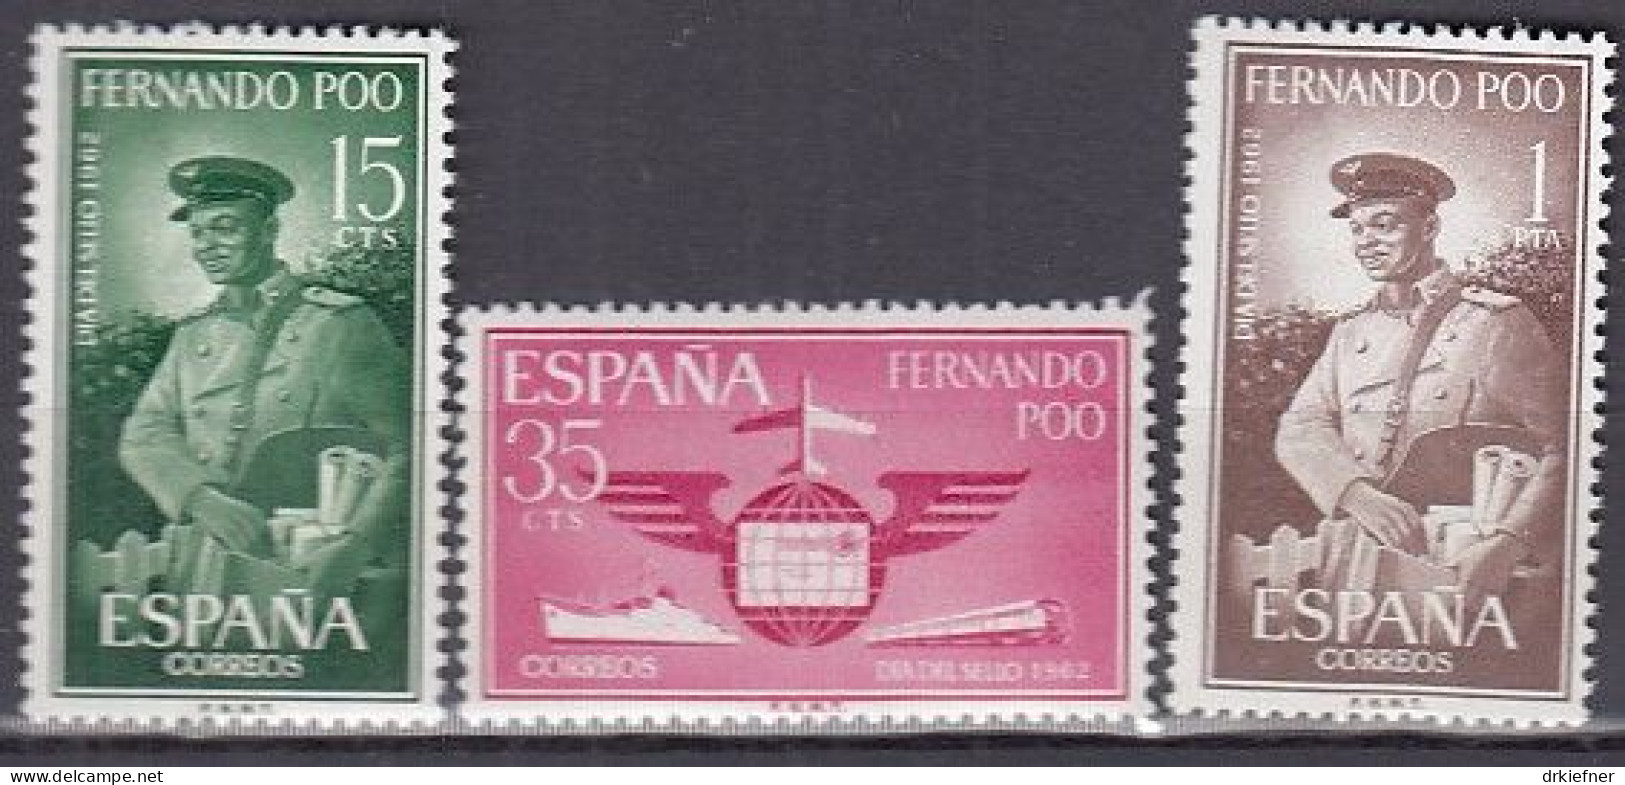 FERNANDO POO  206-208, Postfrisch **, Tag Der Briefmarke, 1962 - Fernando Po